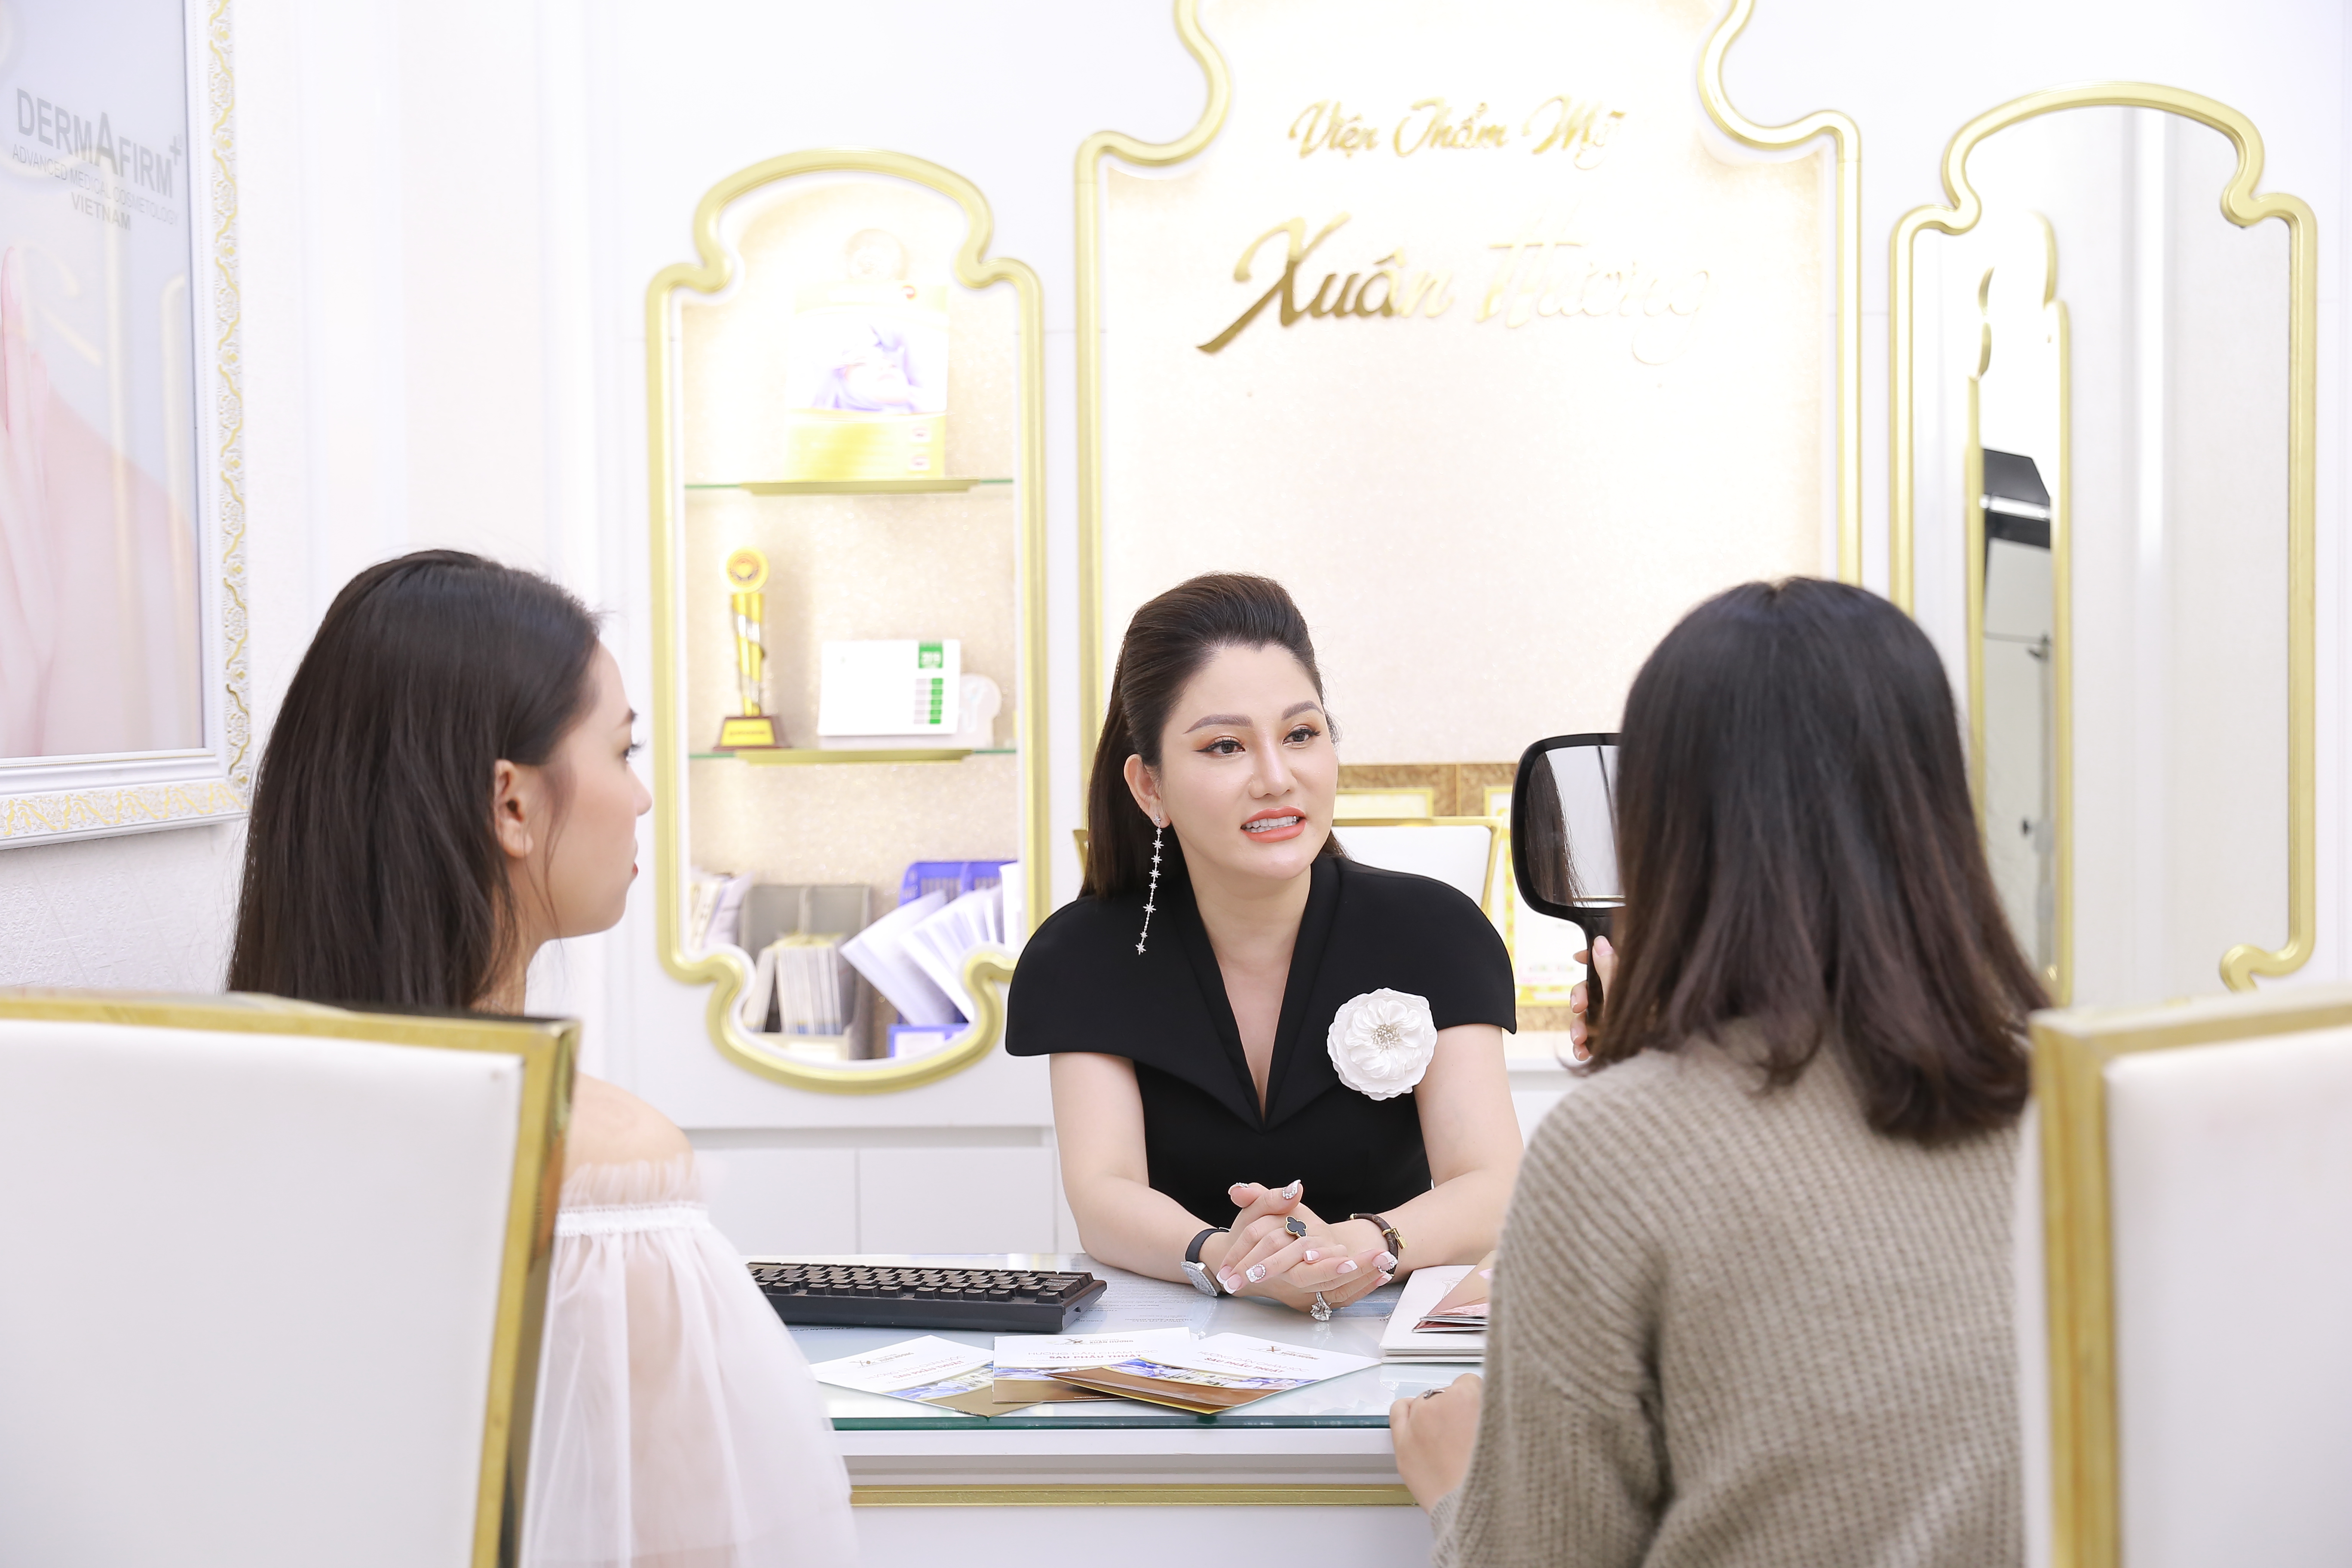 CEO Xuân Hương chia sẻ bí mật làm nên nhan sắc không tuổi của mình: “Muốn đẹp trước hết phải an toàn” - Ảnh 6.